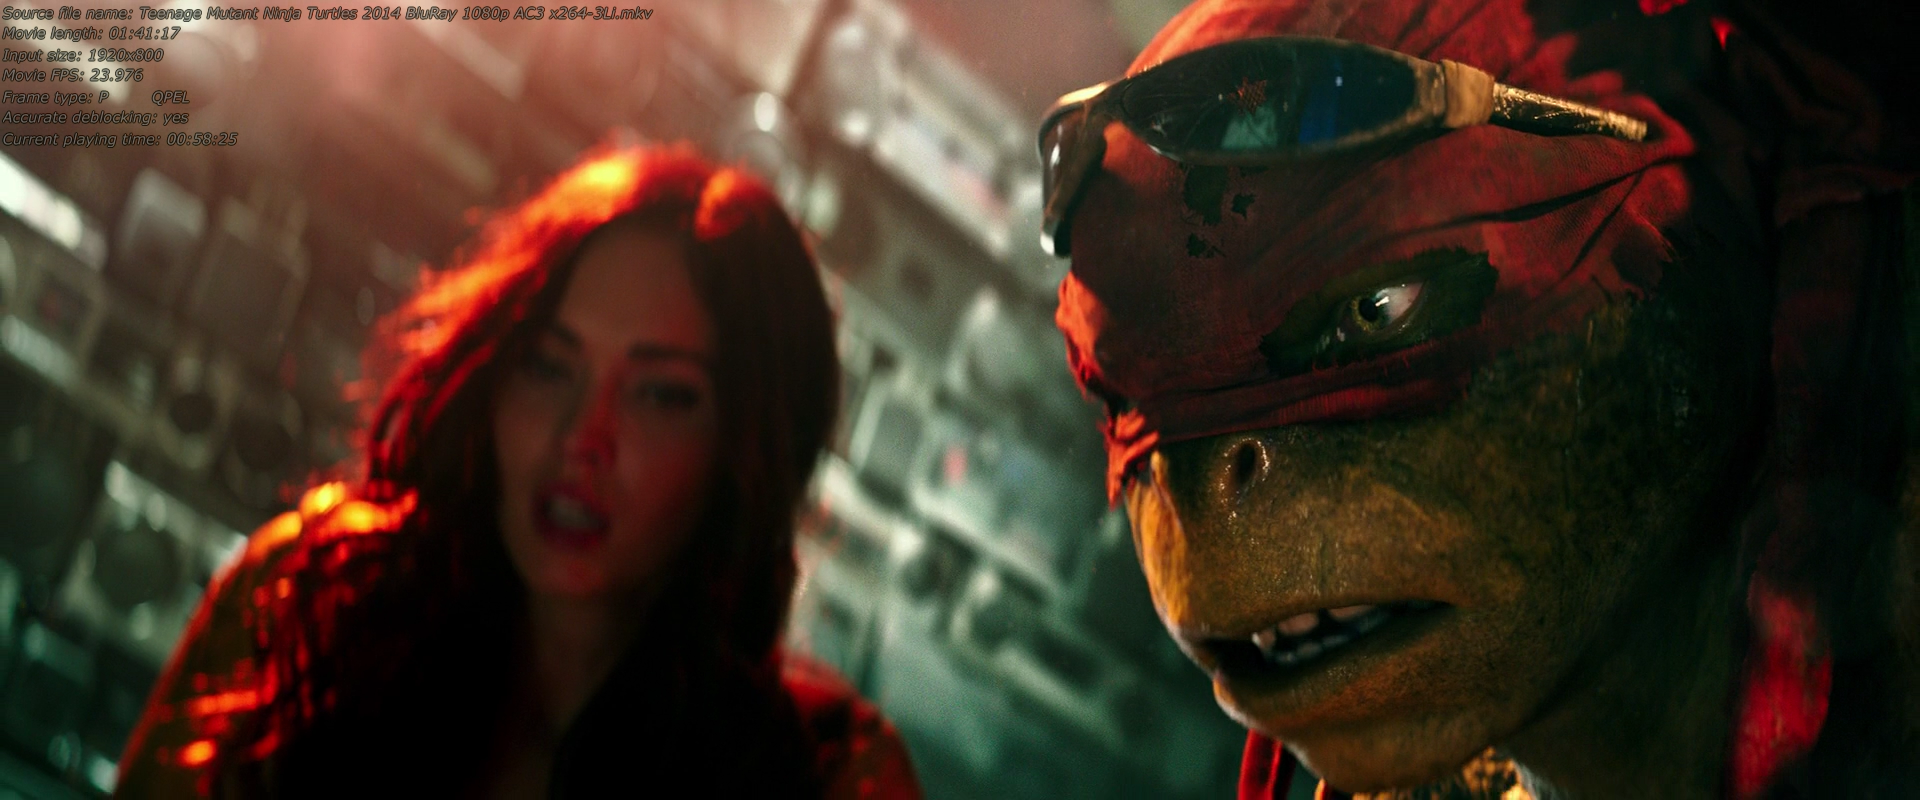 Teenage Mutant Ninja Turtles 2014 Screen 04.png